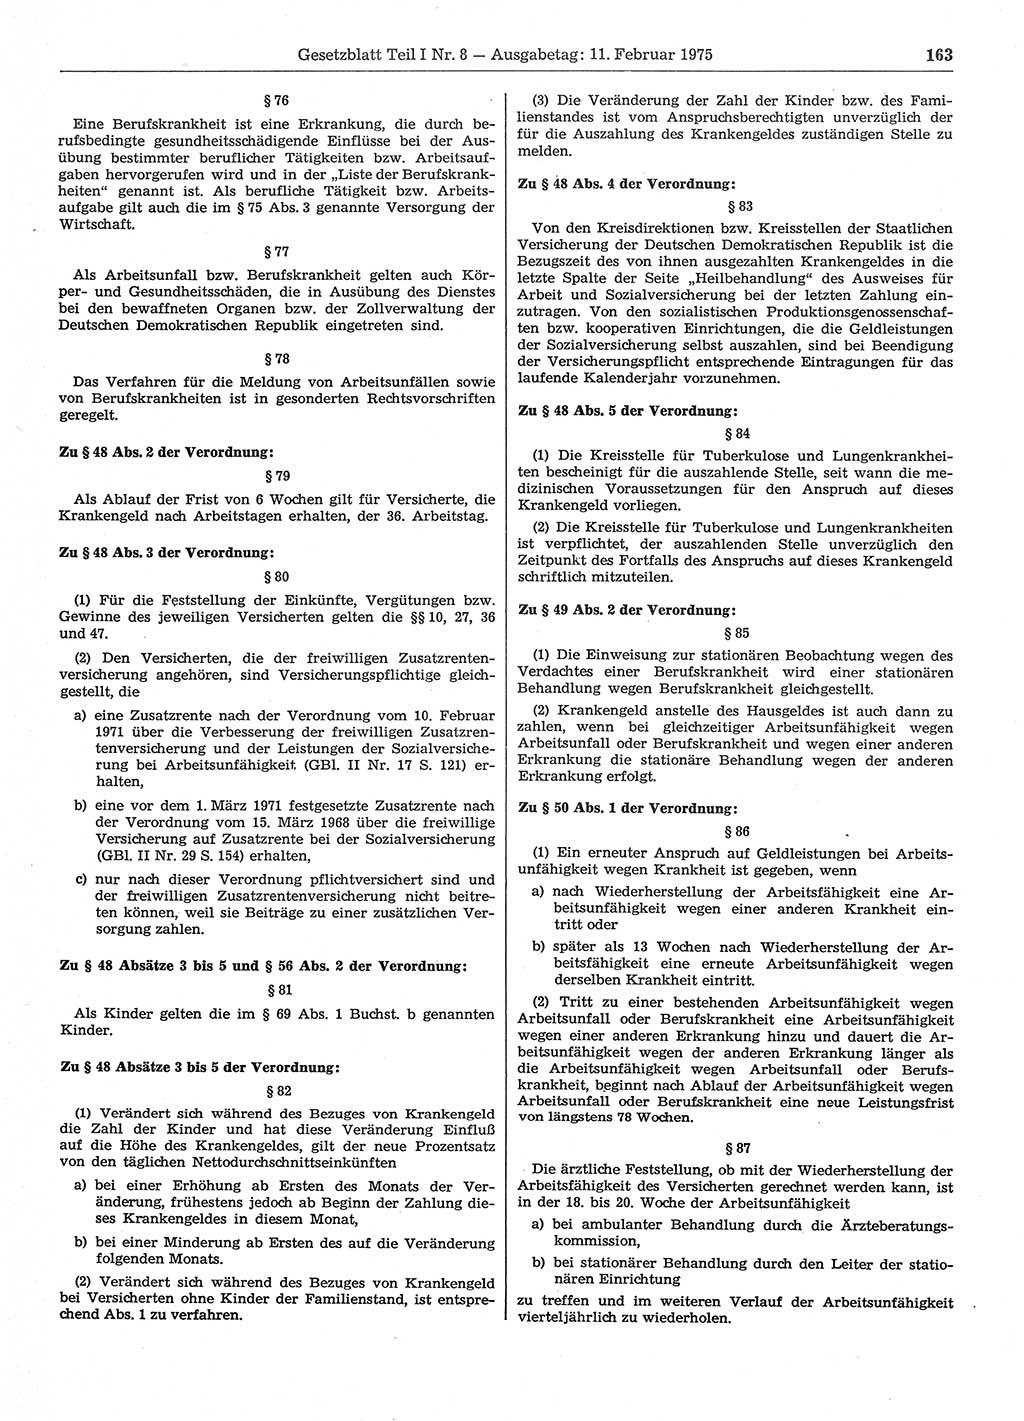 Gesetzblatt (GBl.) der Deutschen Demokratischen Republik (DDR) Teil Ⅰ 1975, Seite 163 (GBl. DDR Ⅰ 1975, S. 163)